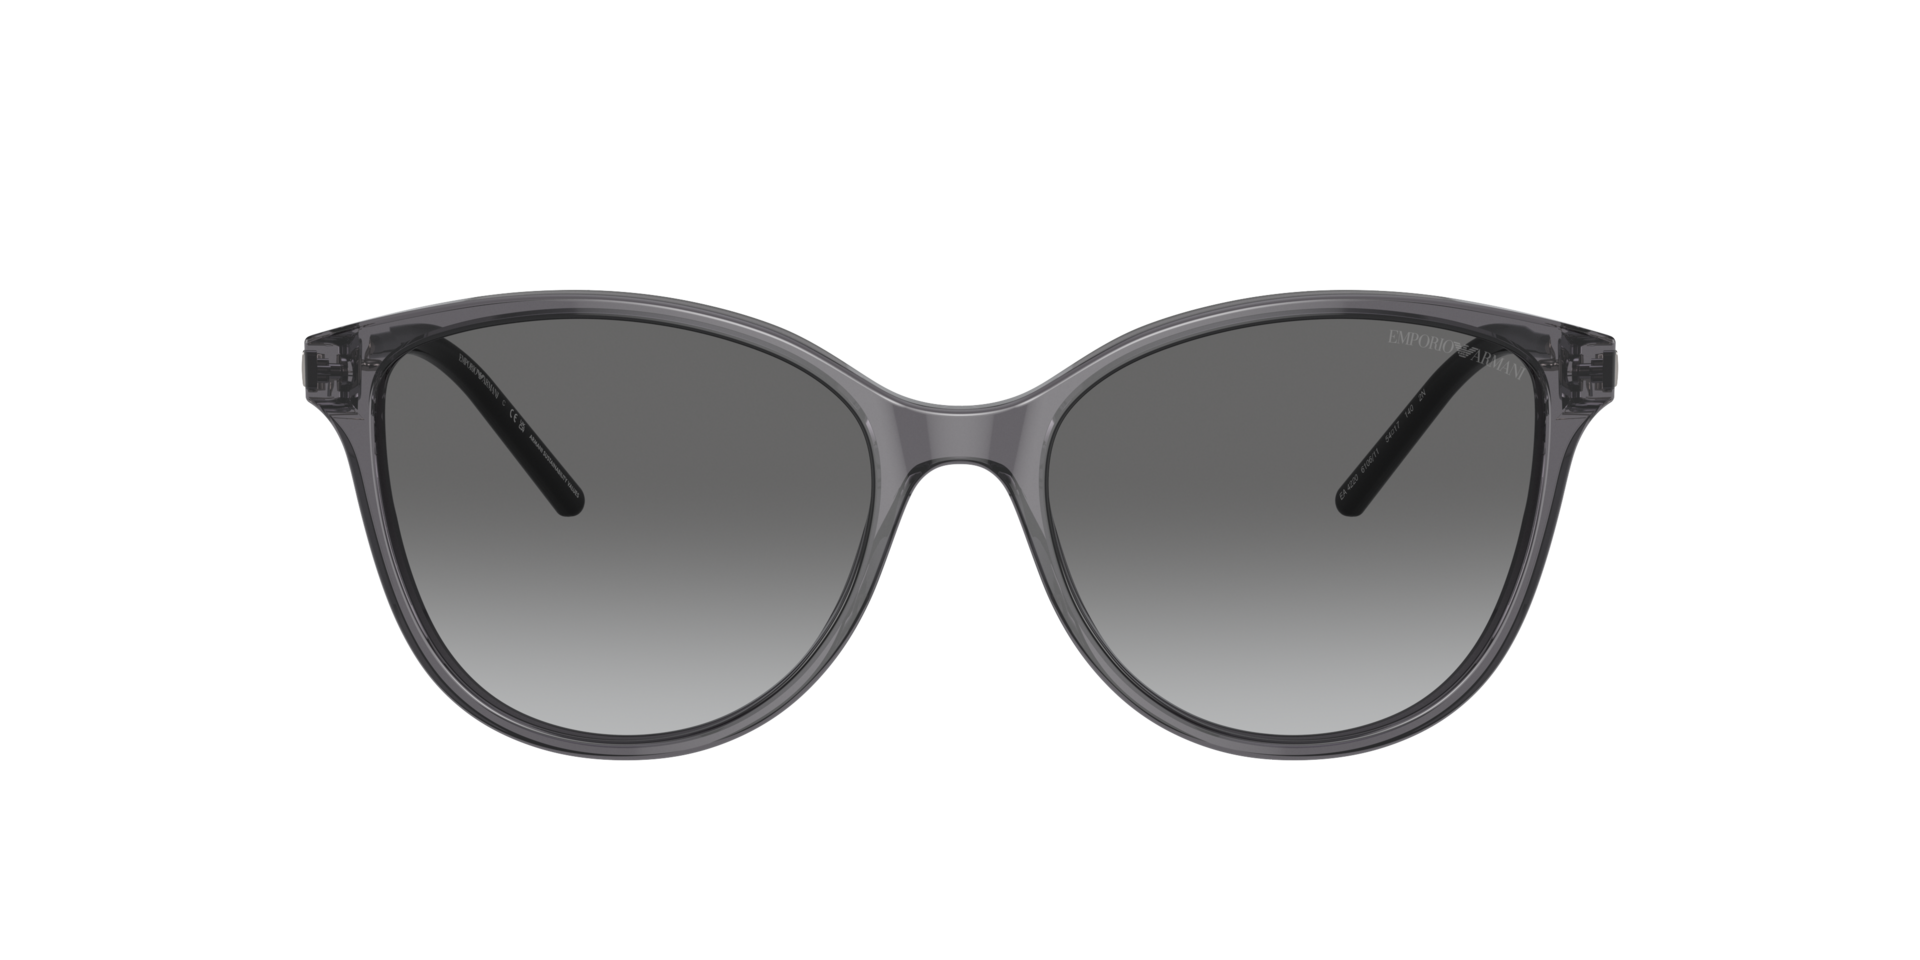 Das Bild zeigt die Sonnenbrille EA4220 610611 von der Marke Emporio Armani in schwarz.